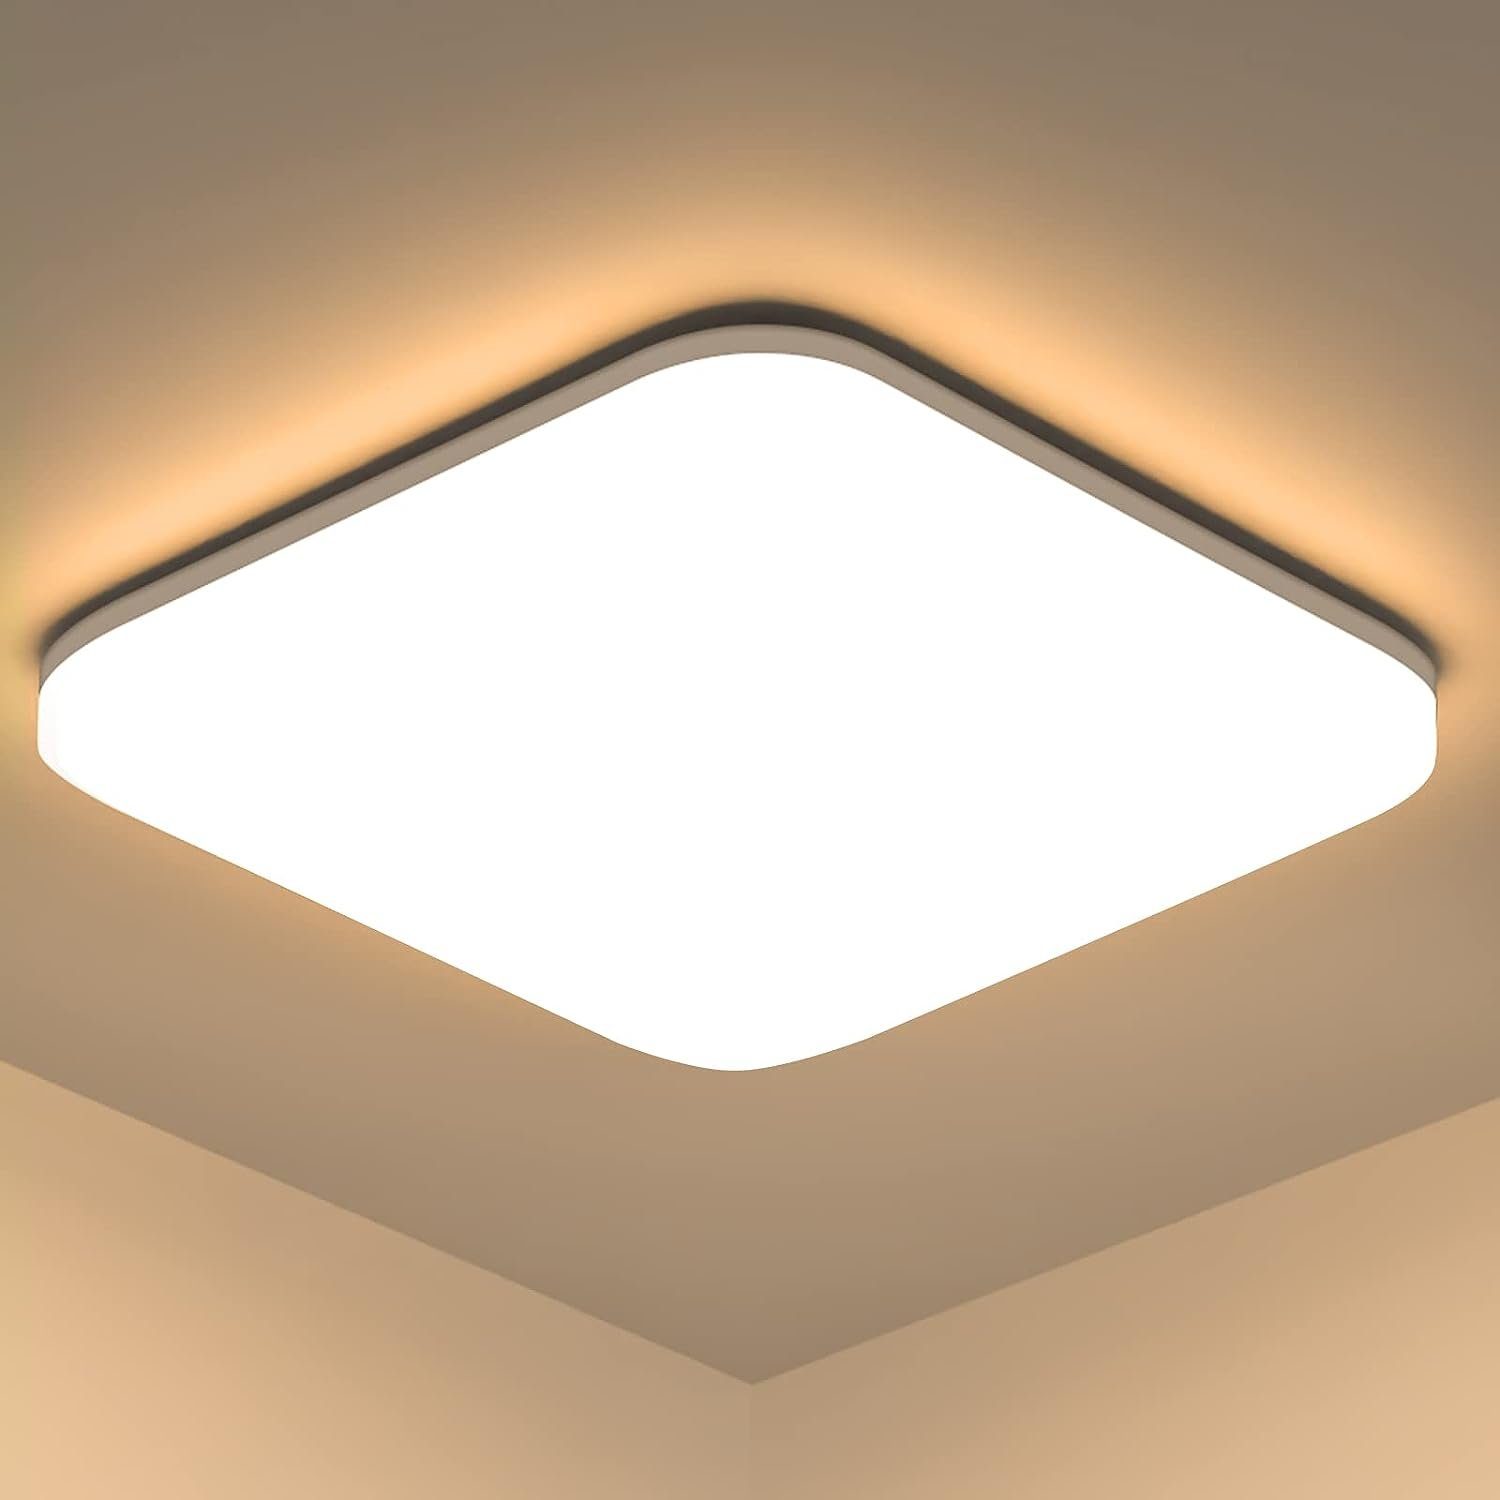 Decke, IP54 fest Wasserfest Deckenleuchte Badlampe LED Rund integriert Badezimmer ZMH LED Deckenlampe